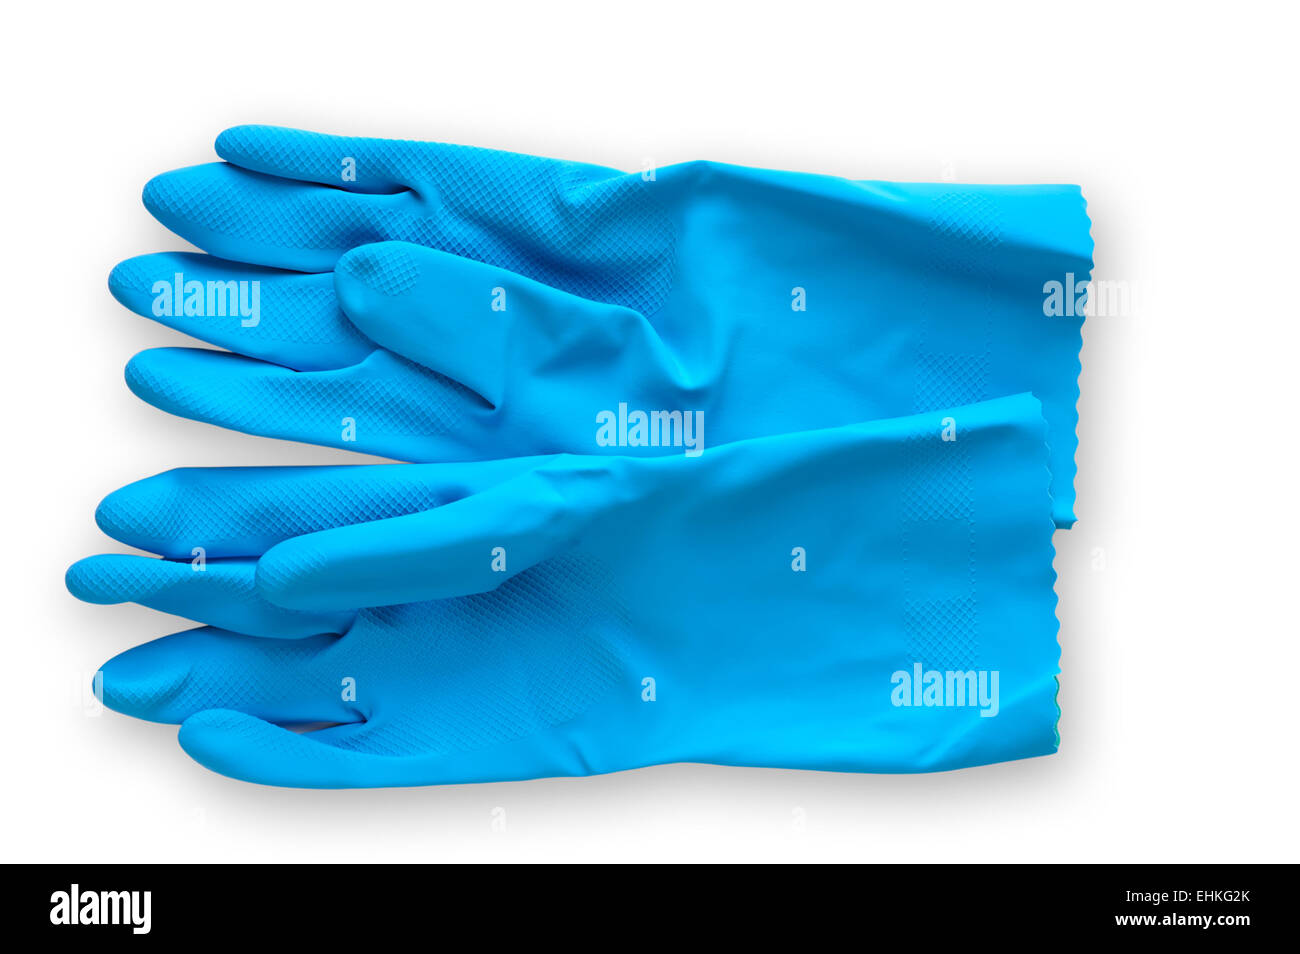 L'outil de travail : gants de caoutchouc avec clipping path Banque D'Images